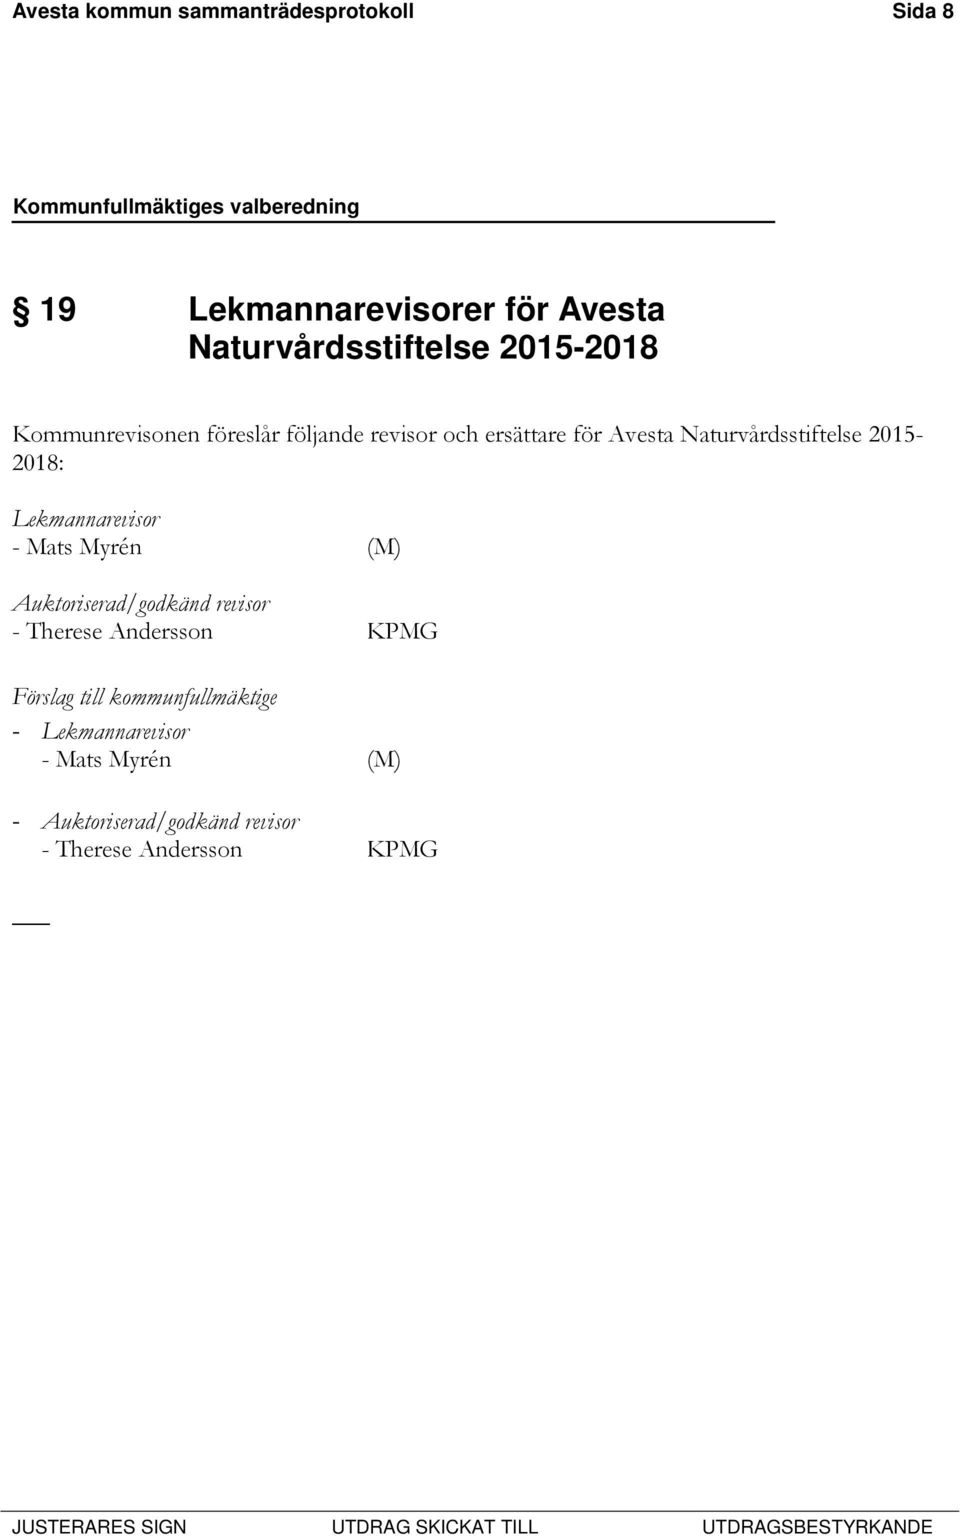 för Avesta Naturvårdsstiftelse 2015-2018: Lekmannarevisor Auktoriserad/godkänd revisor